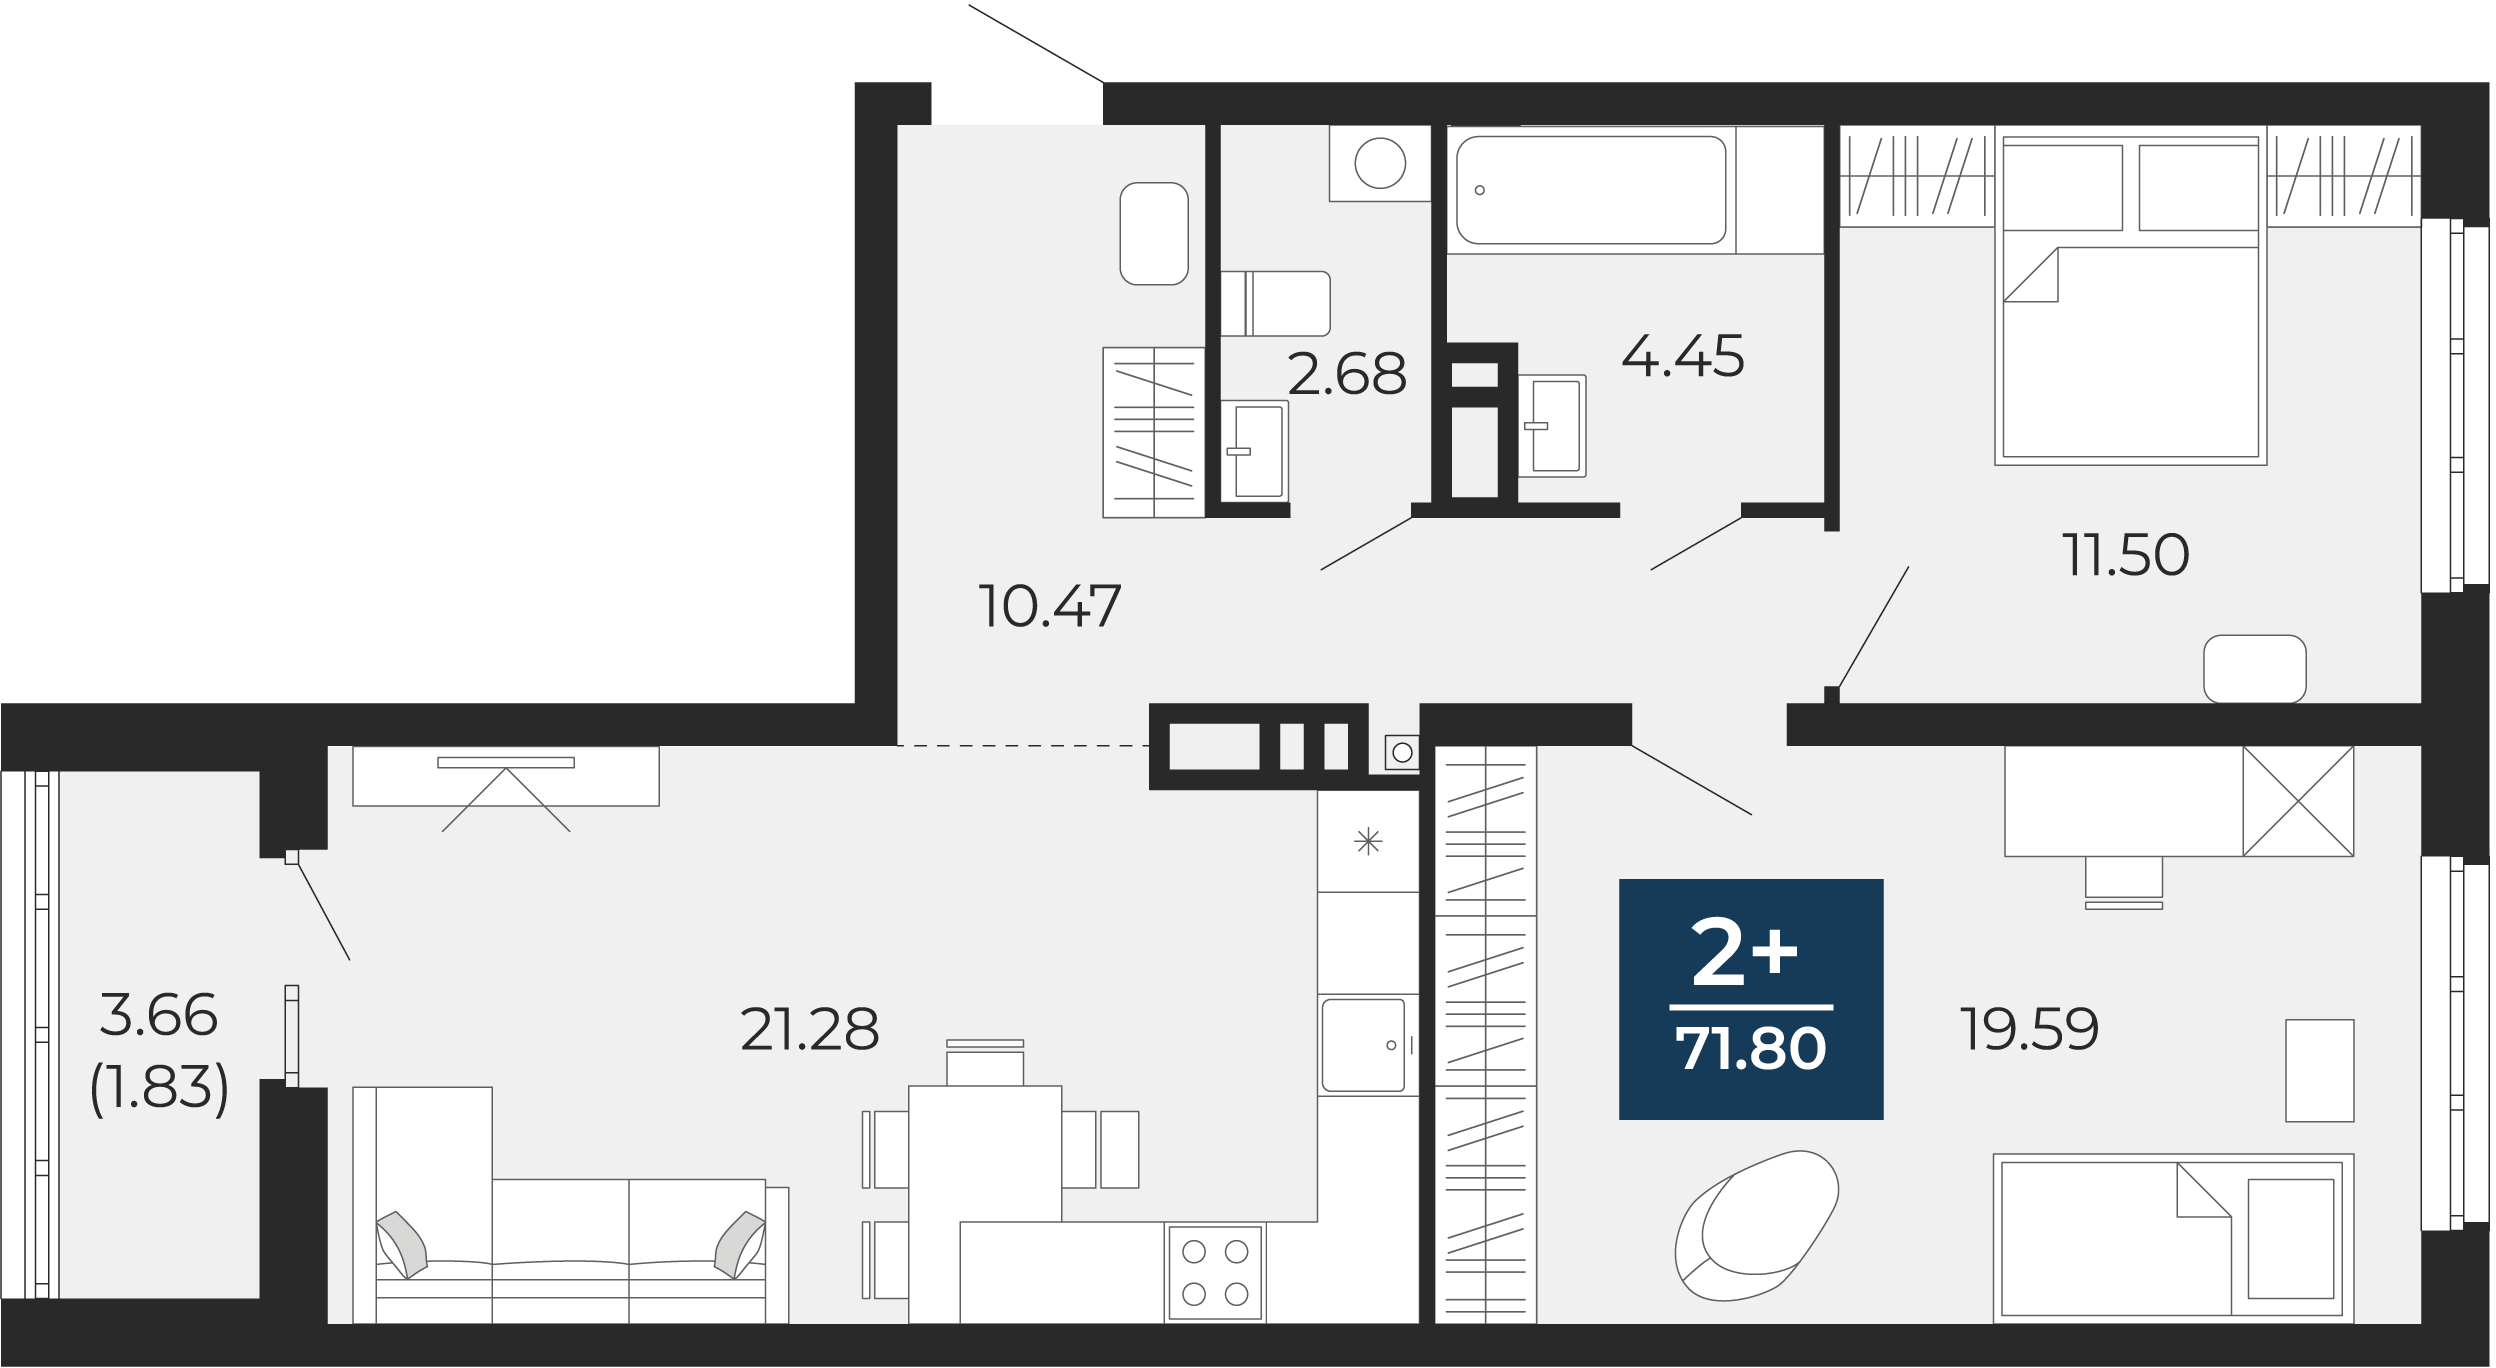 Квартира № 212, 2-комнатная, 71.8 кв. м, 2 этаж